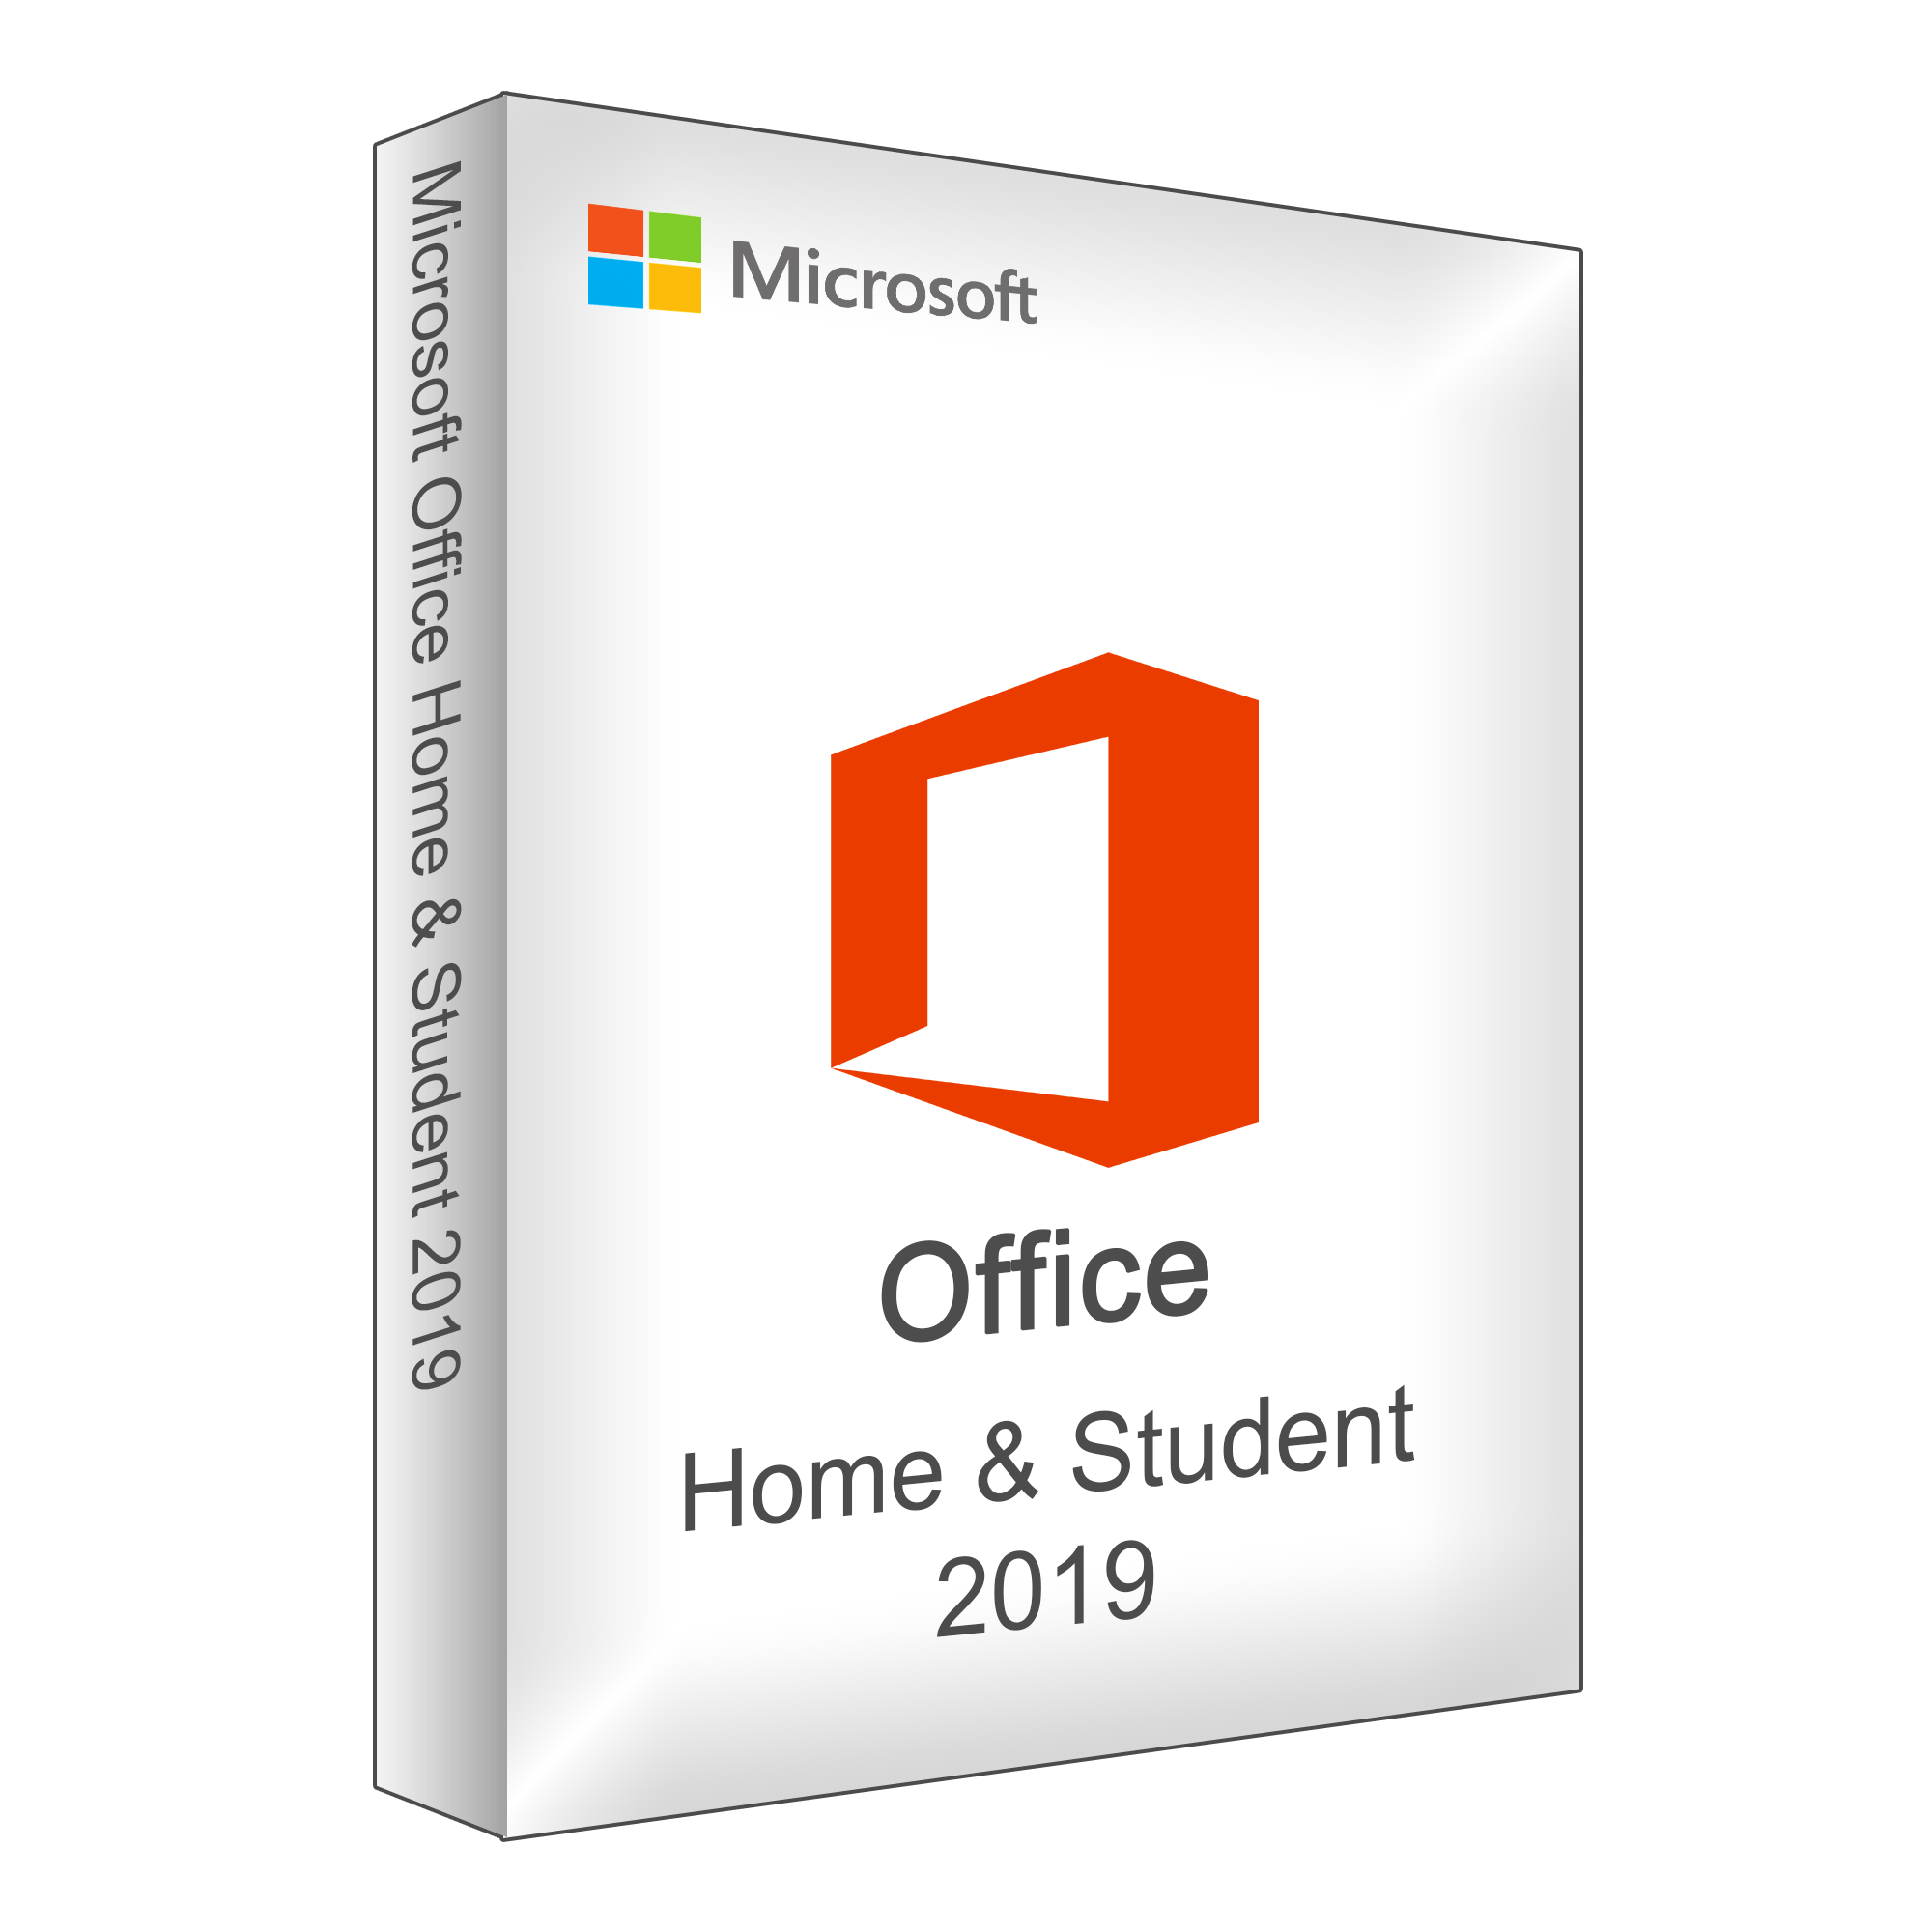 Office 2019 Home Student kaufen - Ascotech